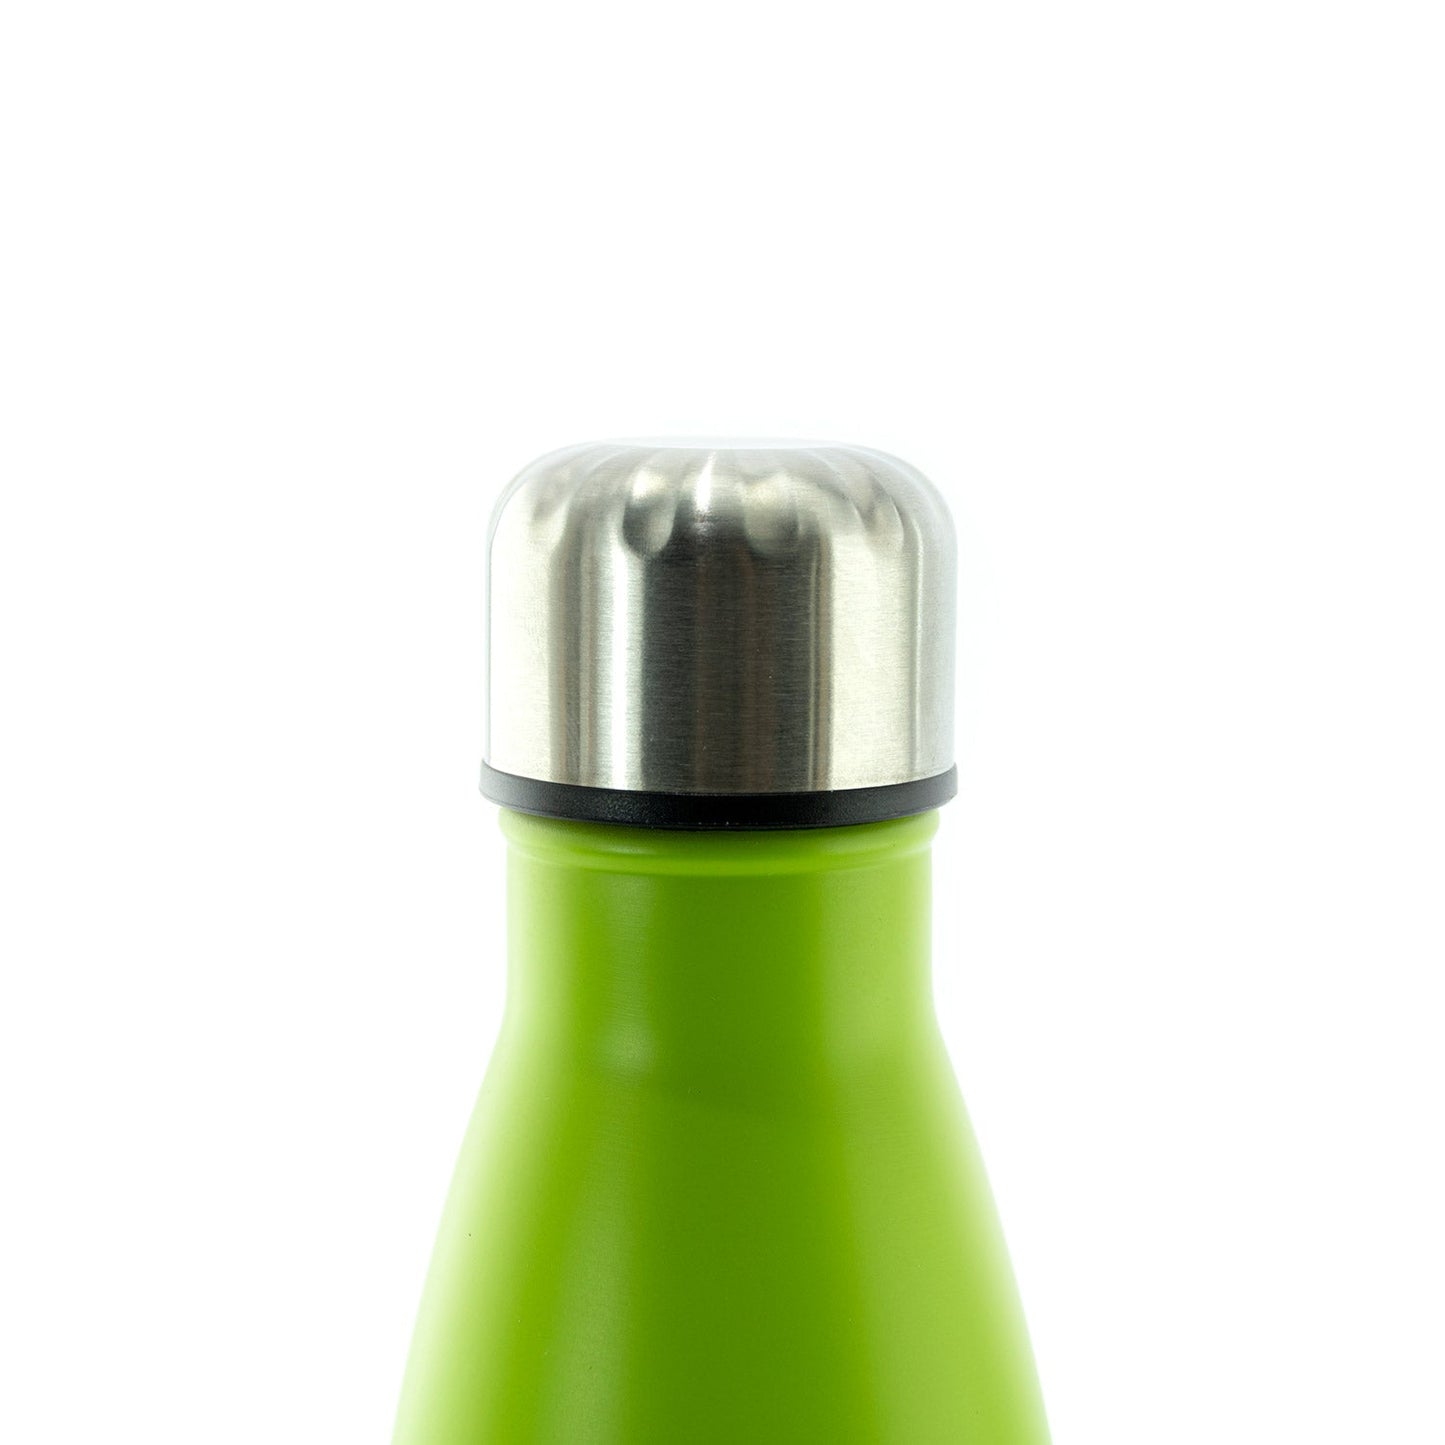 Tennis Water Bottle - 500 ml - BeLoco